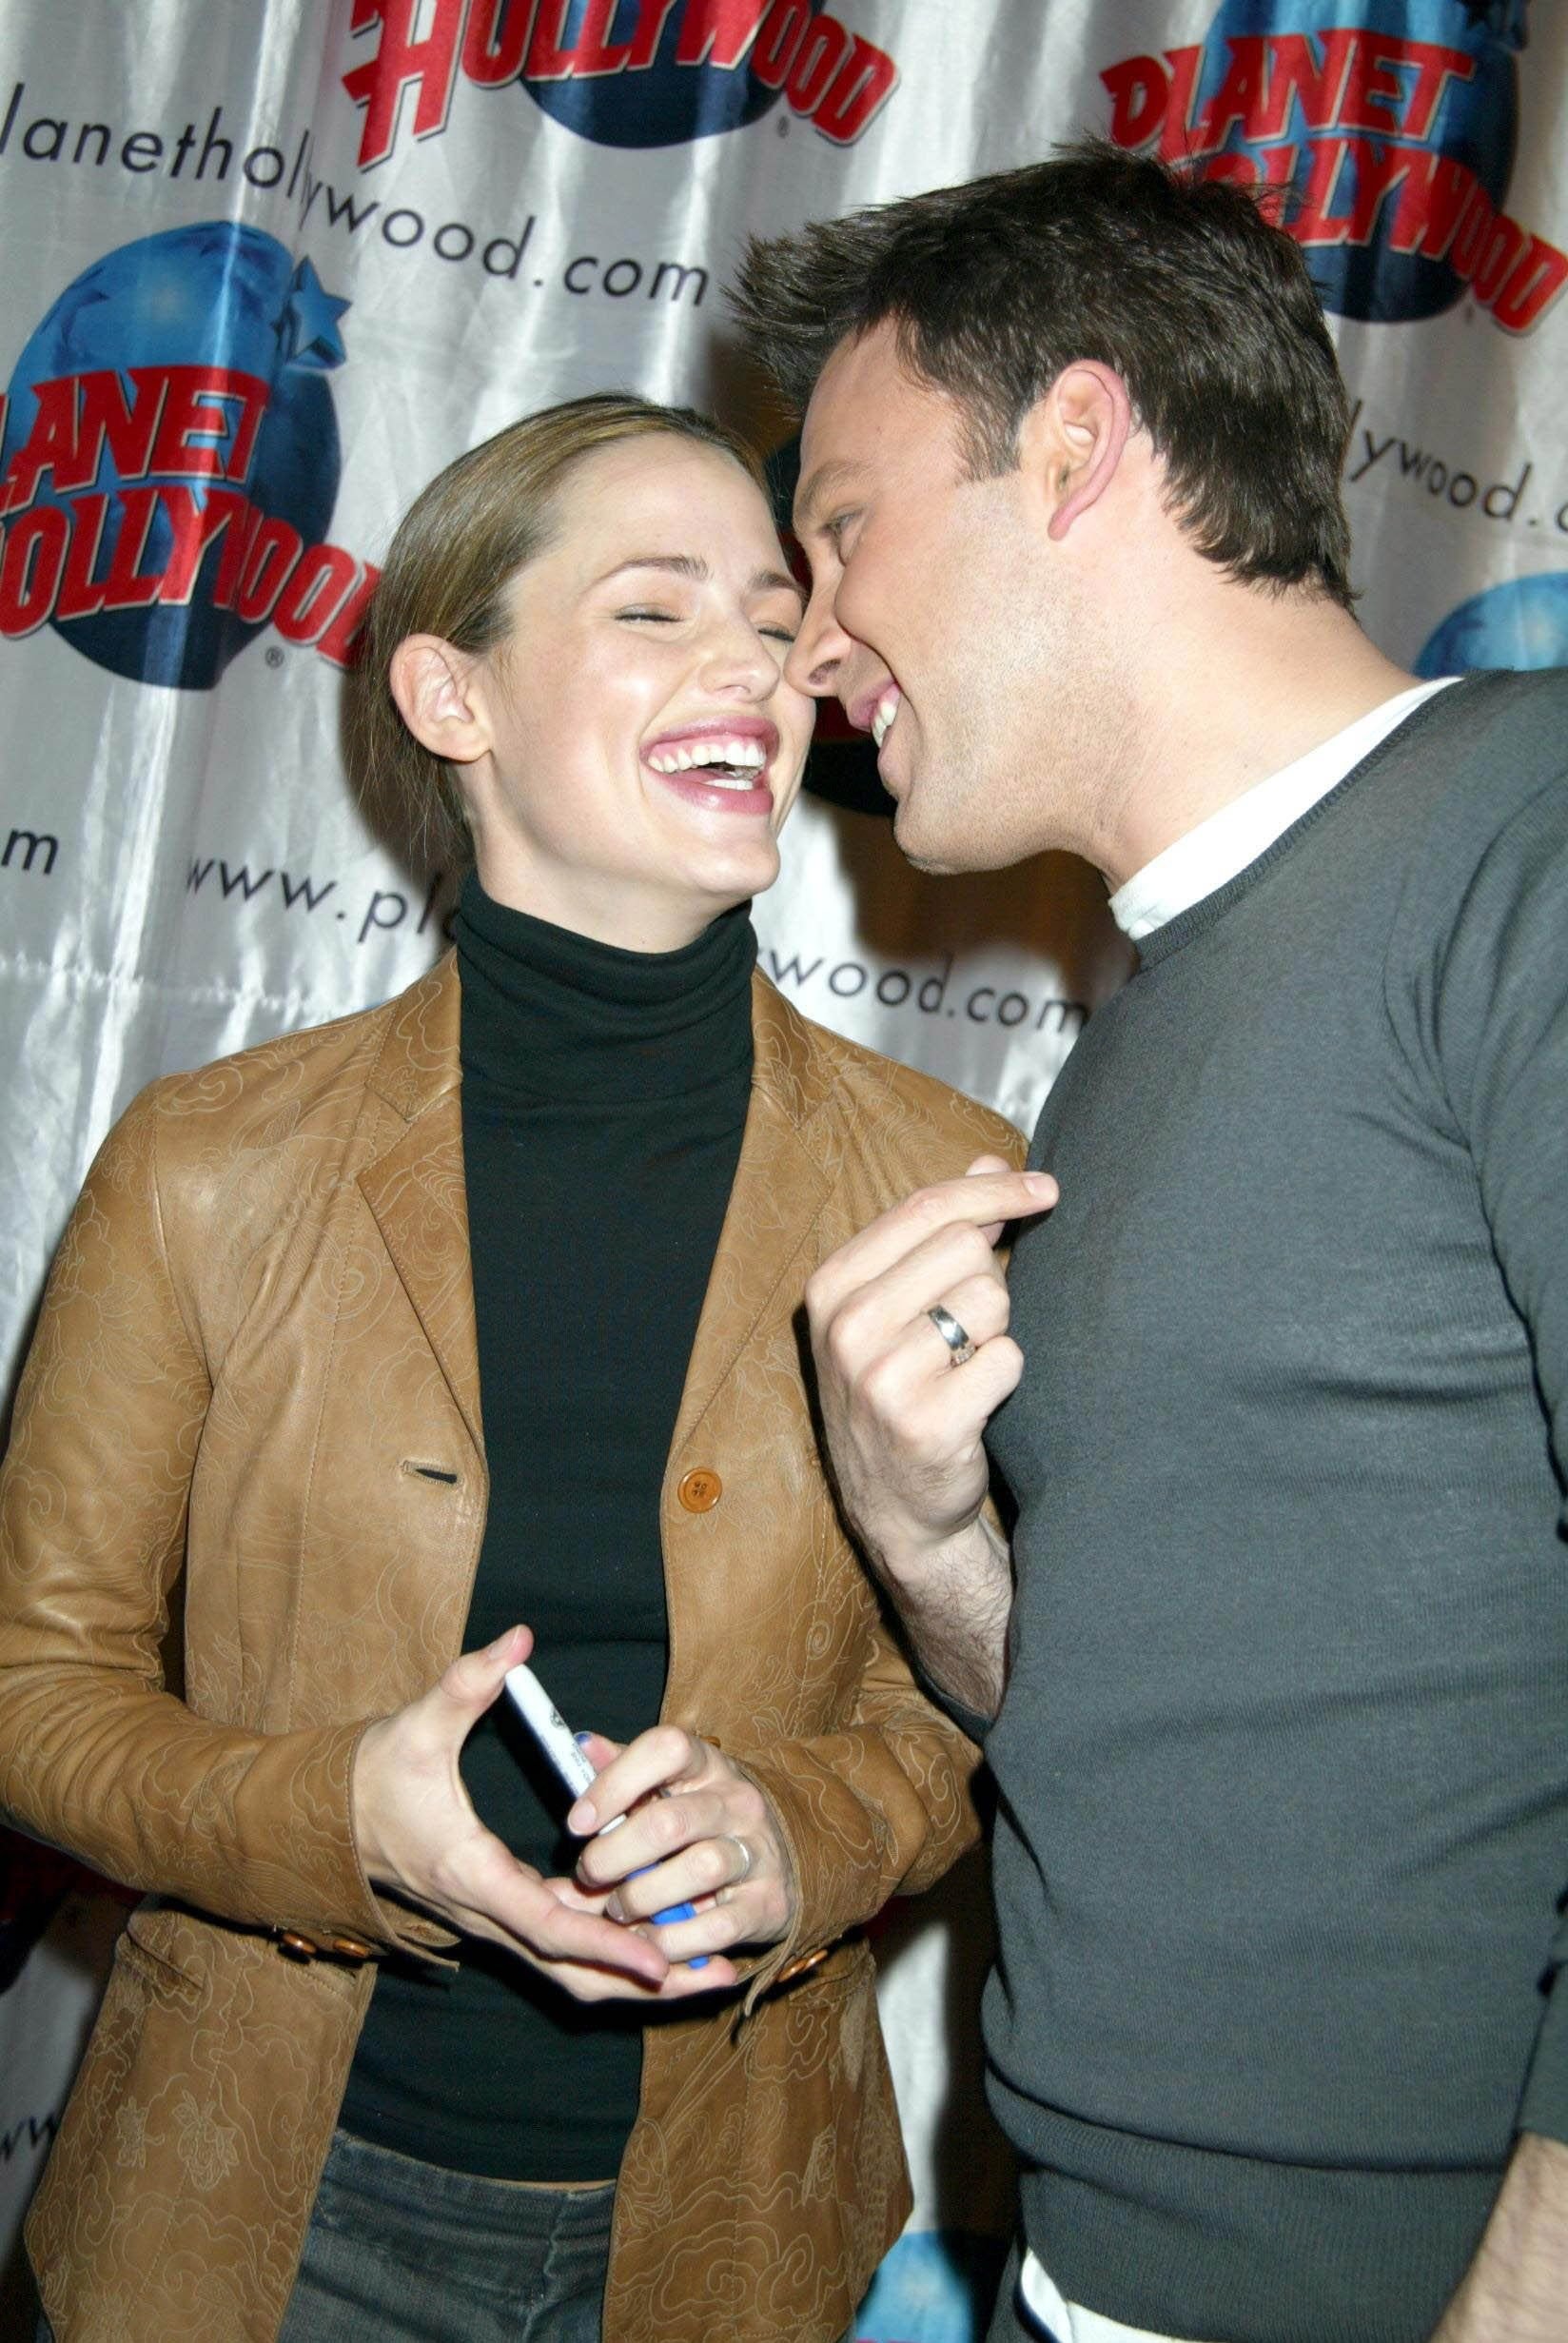 Das ehemalige Paar während der Privatvorführung von "Daredevil" im Planet Hollywood in New York | Quelle: Getty Images